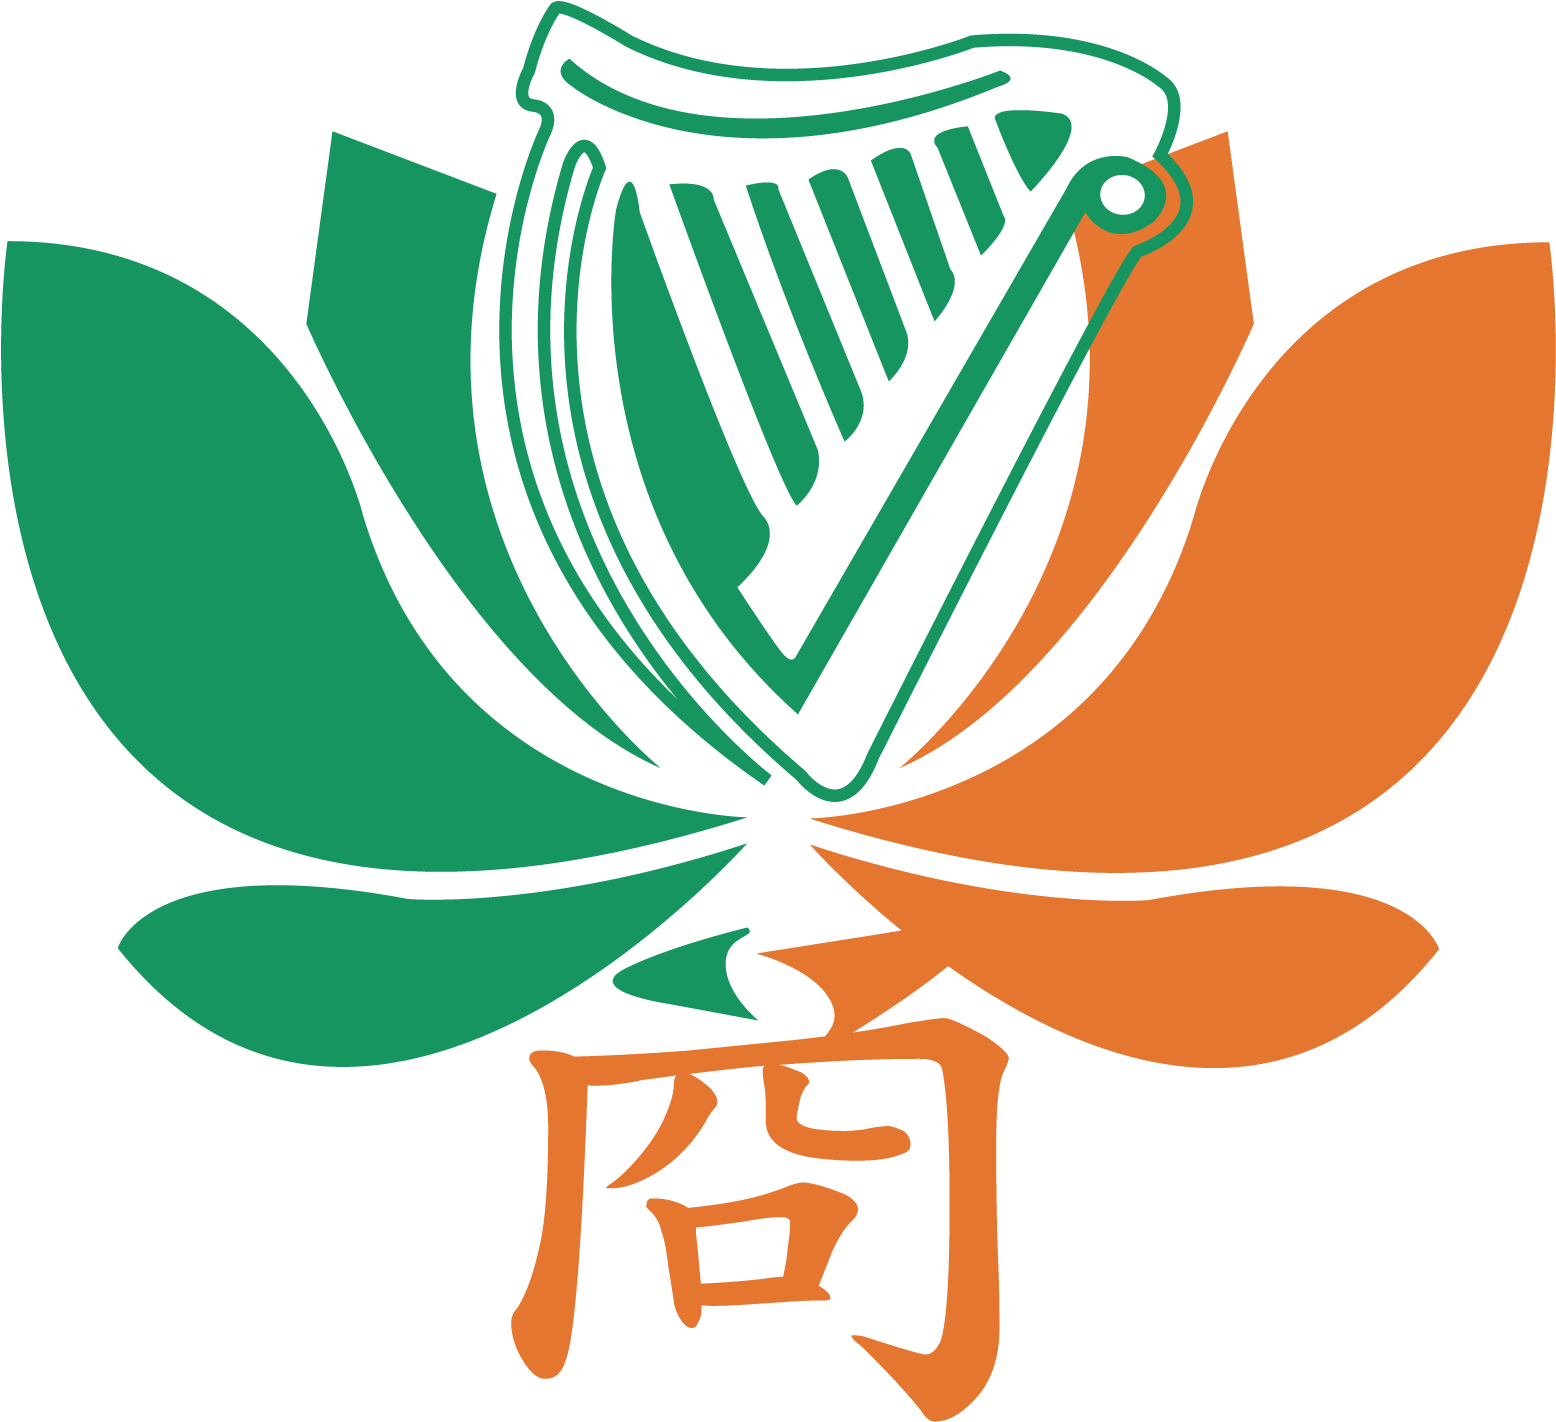 Notre Dame Fighting Irish Logo Google Search - Irish Chamber Of Commerce Of Macau (1606x1463)